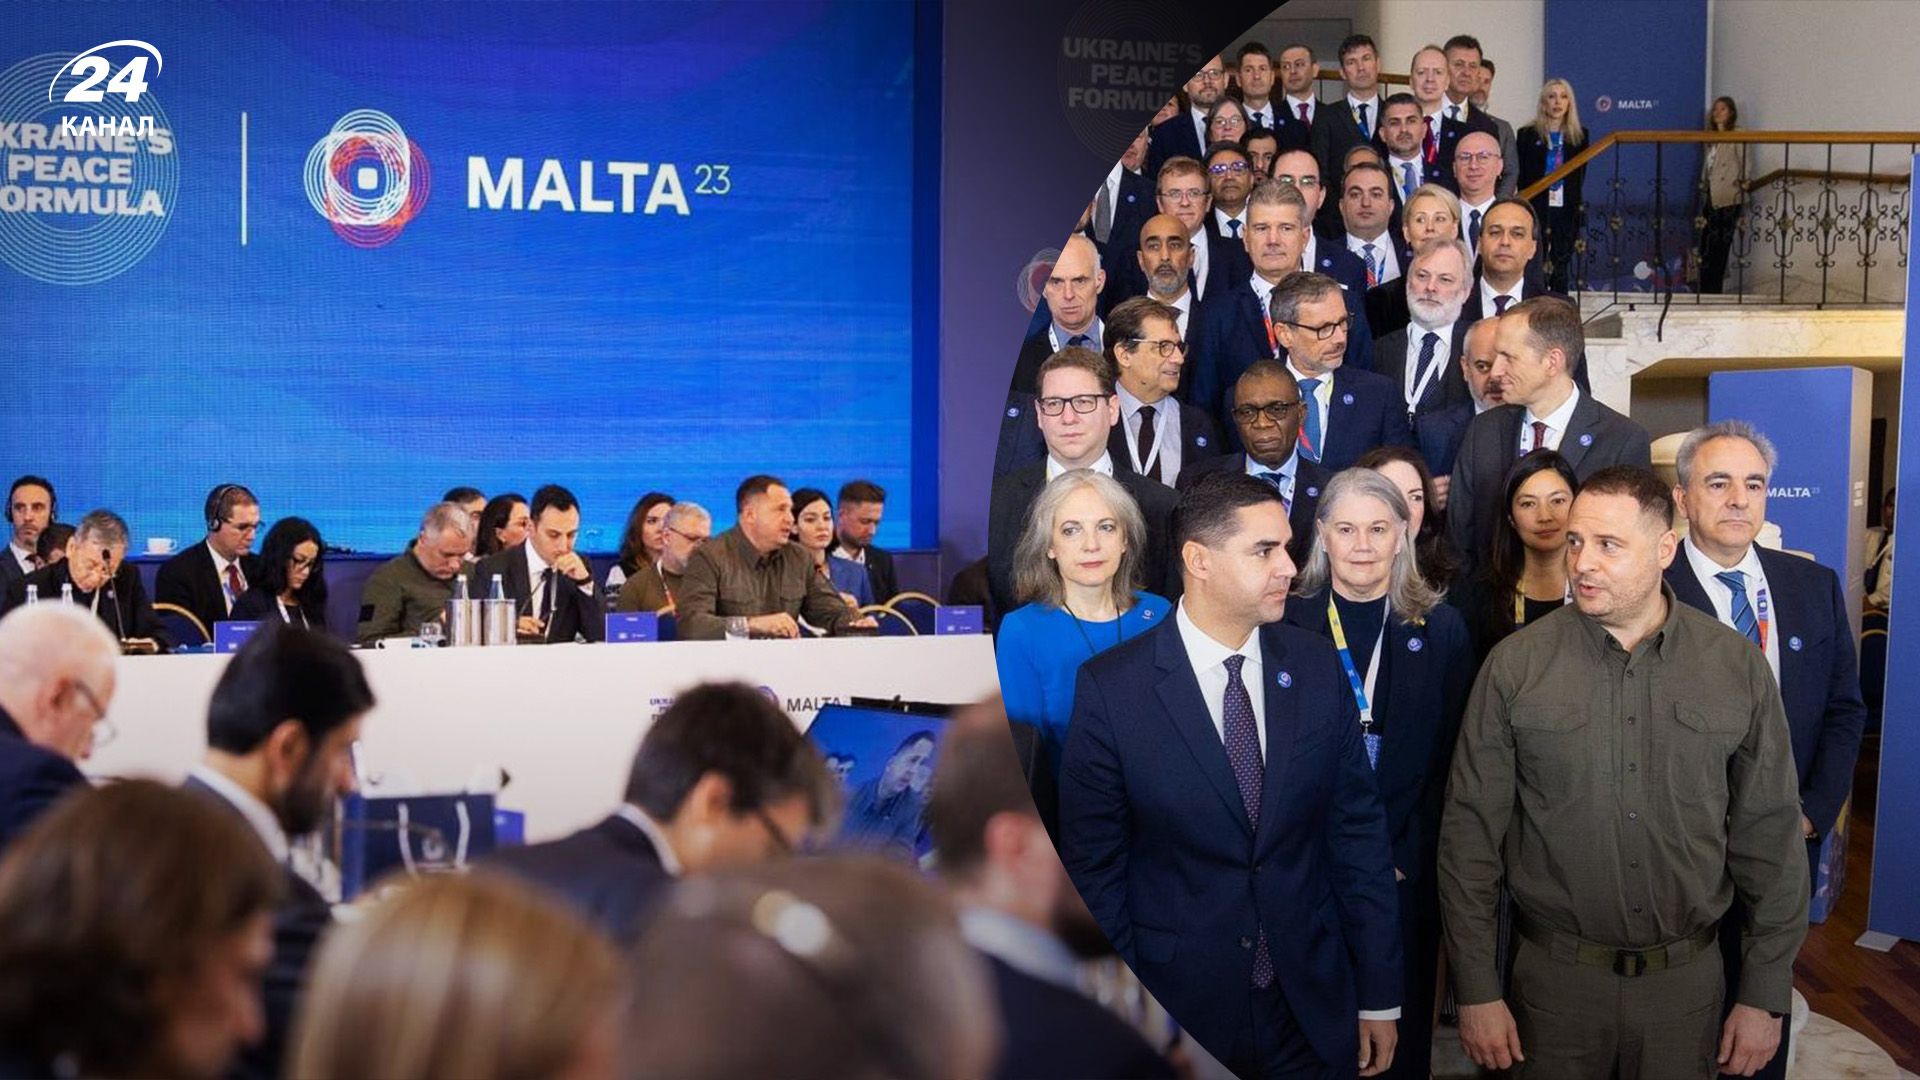 Украинская Формула мира - совместное заявление Украины и Мальты по результатам саммита - 24 Канал